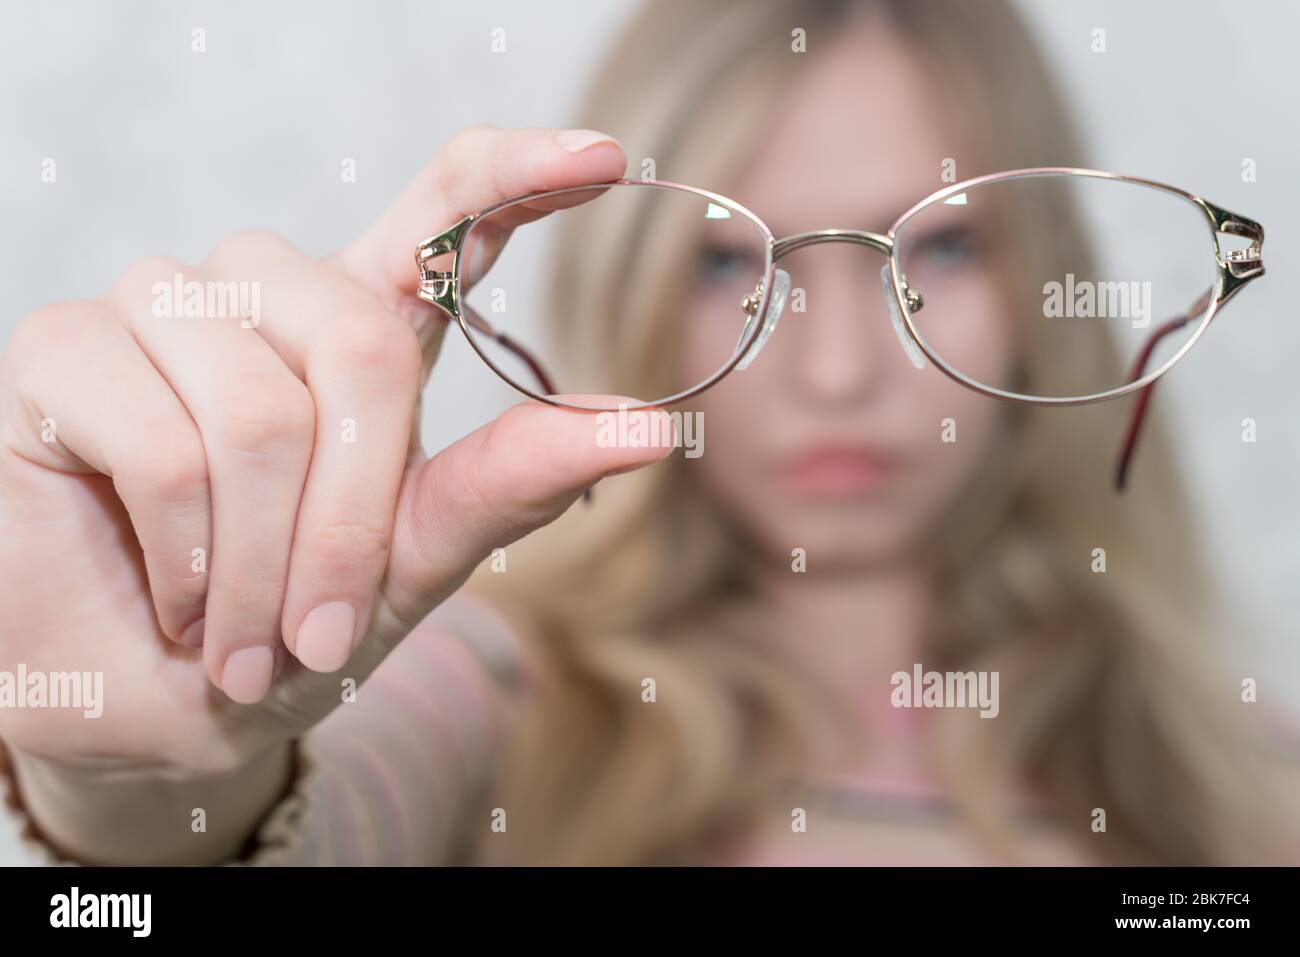 Mädchen hält Brille in den Händen in großer Entfernung von ihrem Gesicht. Gesicht nicht fokussiert Stockfoto